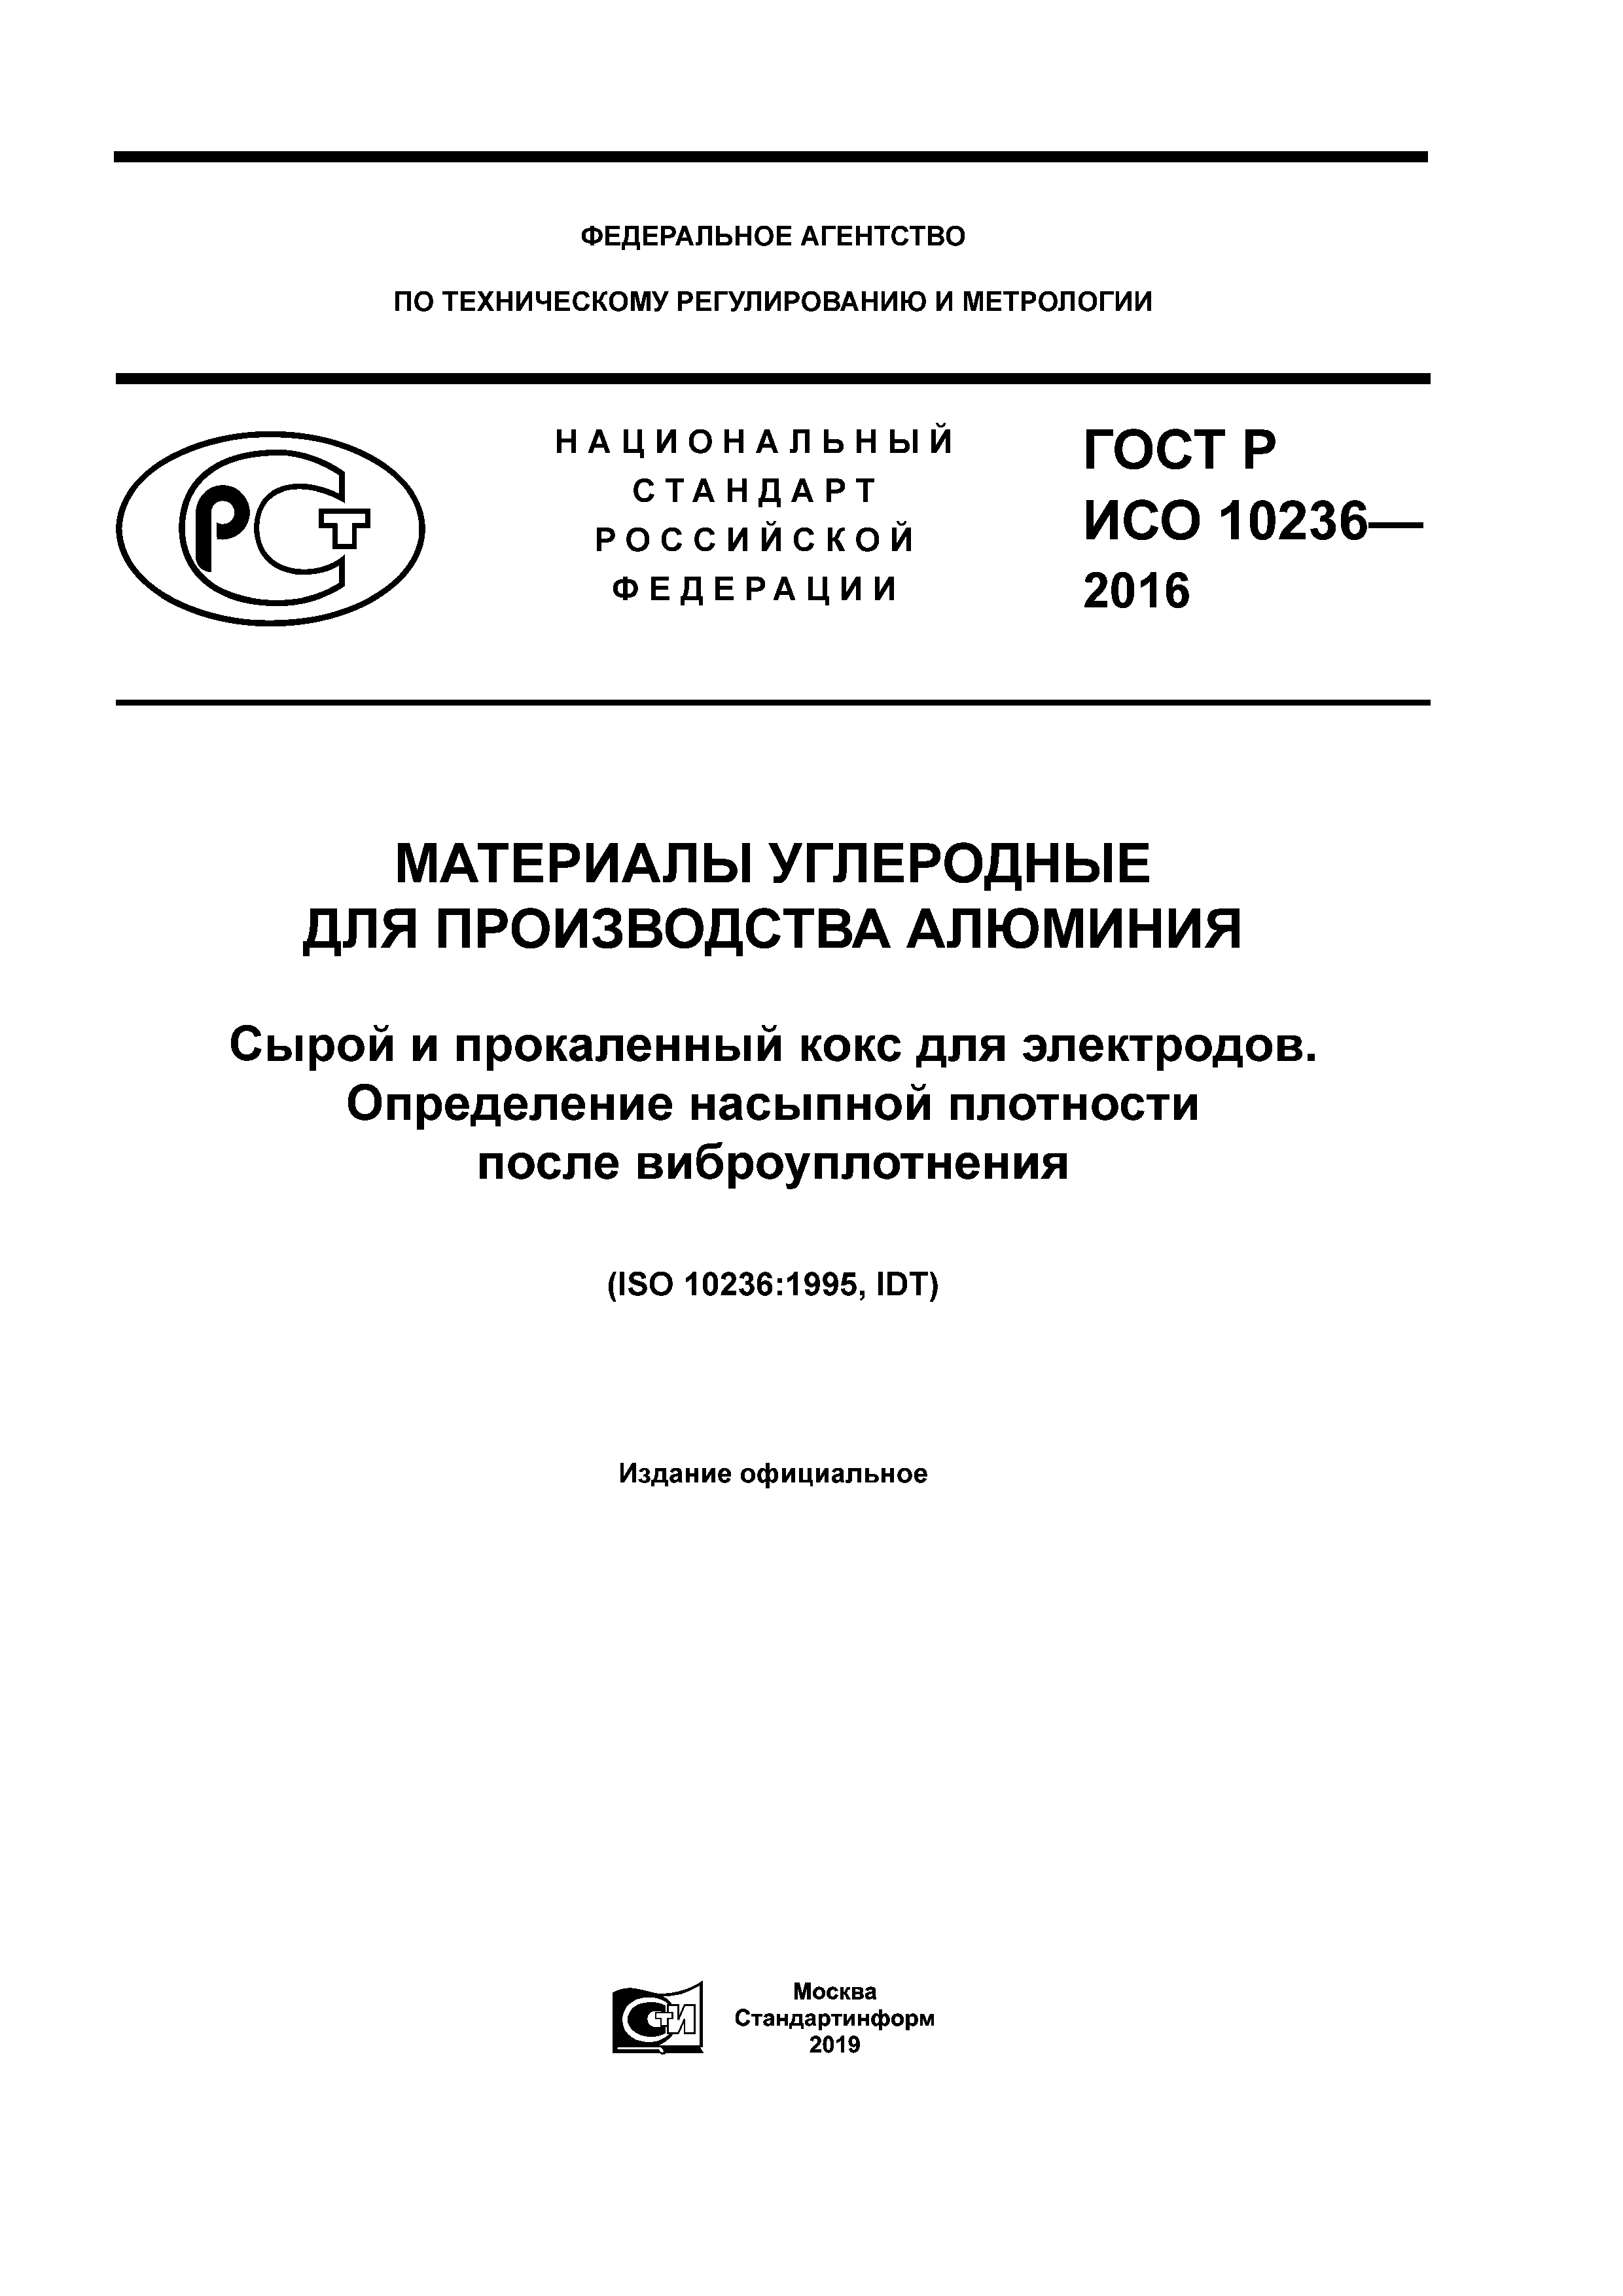 ГОСТ Р ИСО 10236-2016